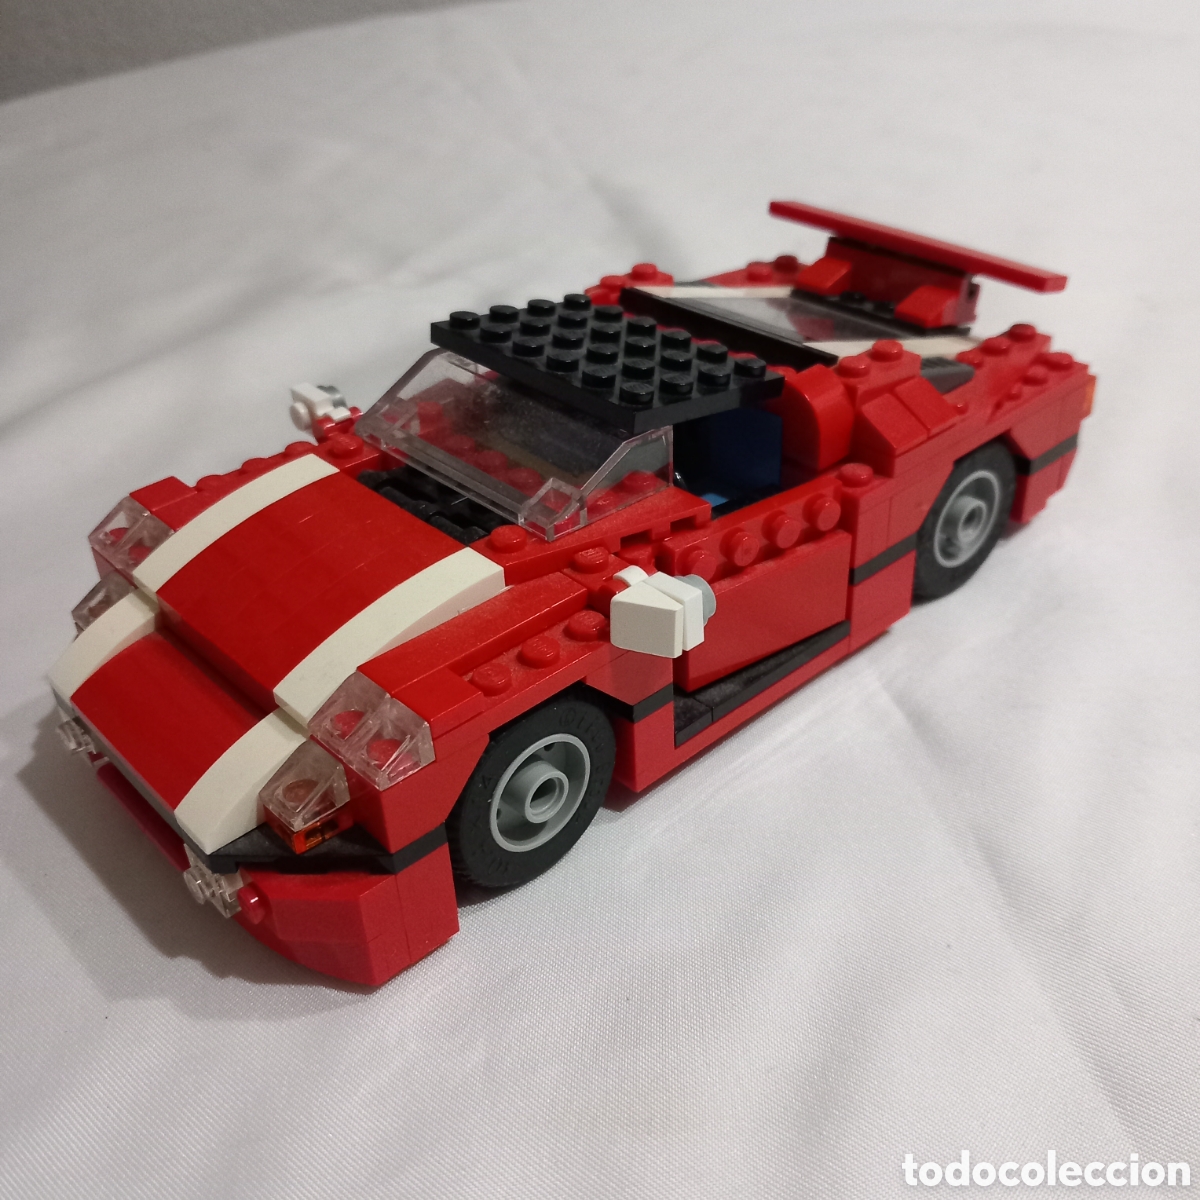 LEGO Coche rojo creador (5867)